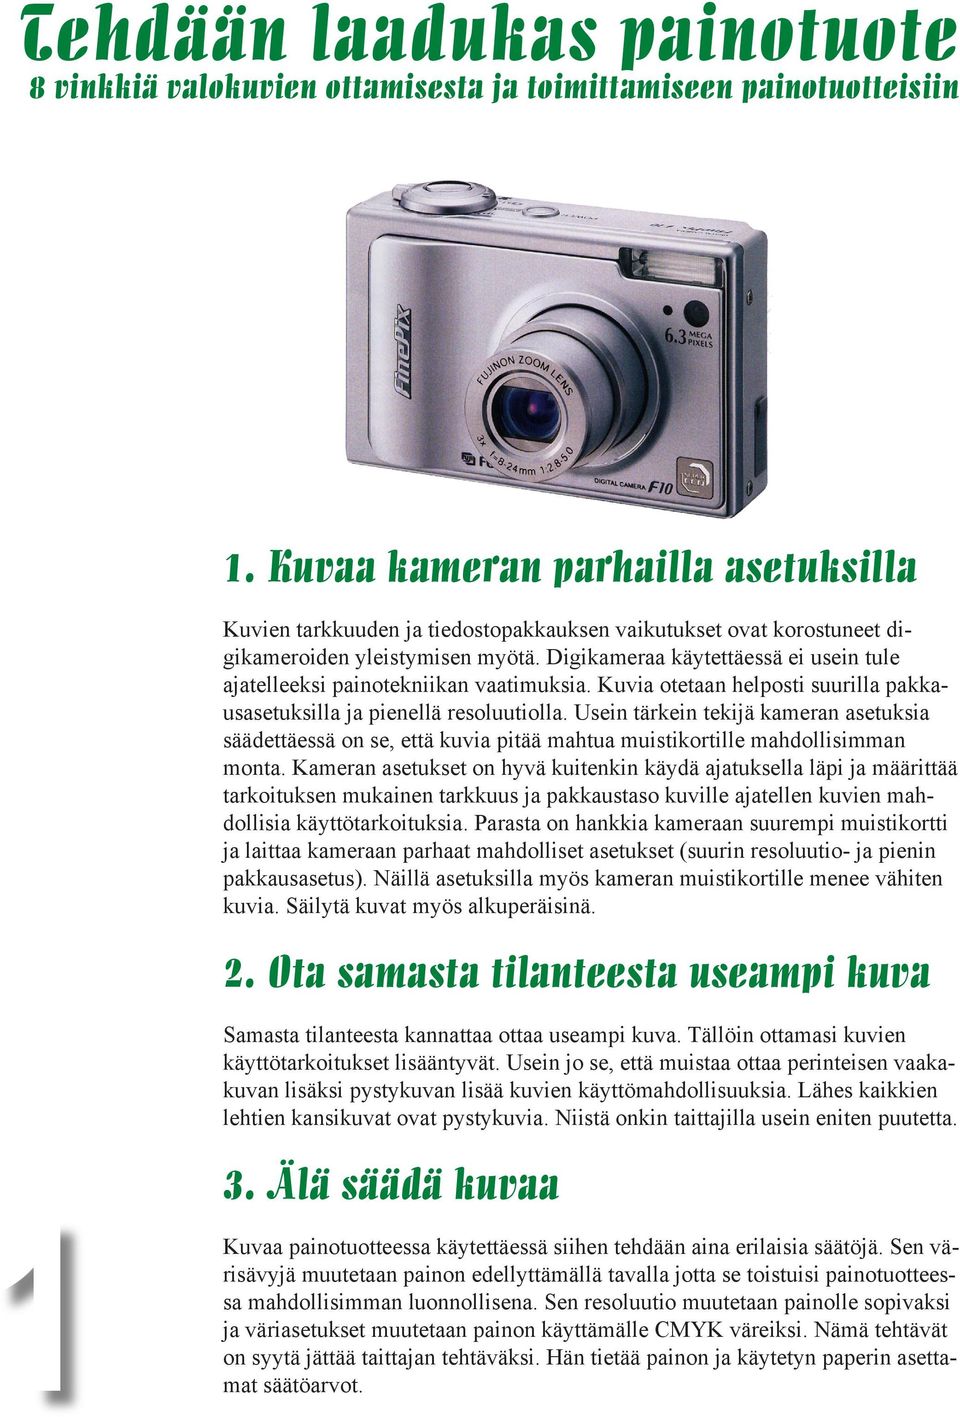 Digikameraa käytettäessä ei usein tule ajatelleeksi painotekniikan vaatimuksia. Kuvia otetaan helposti suurilla pakkausasetuksilla ja pienellä resoluutiolla.